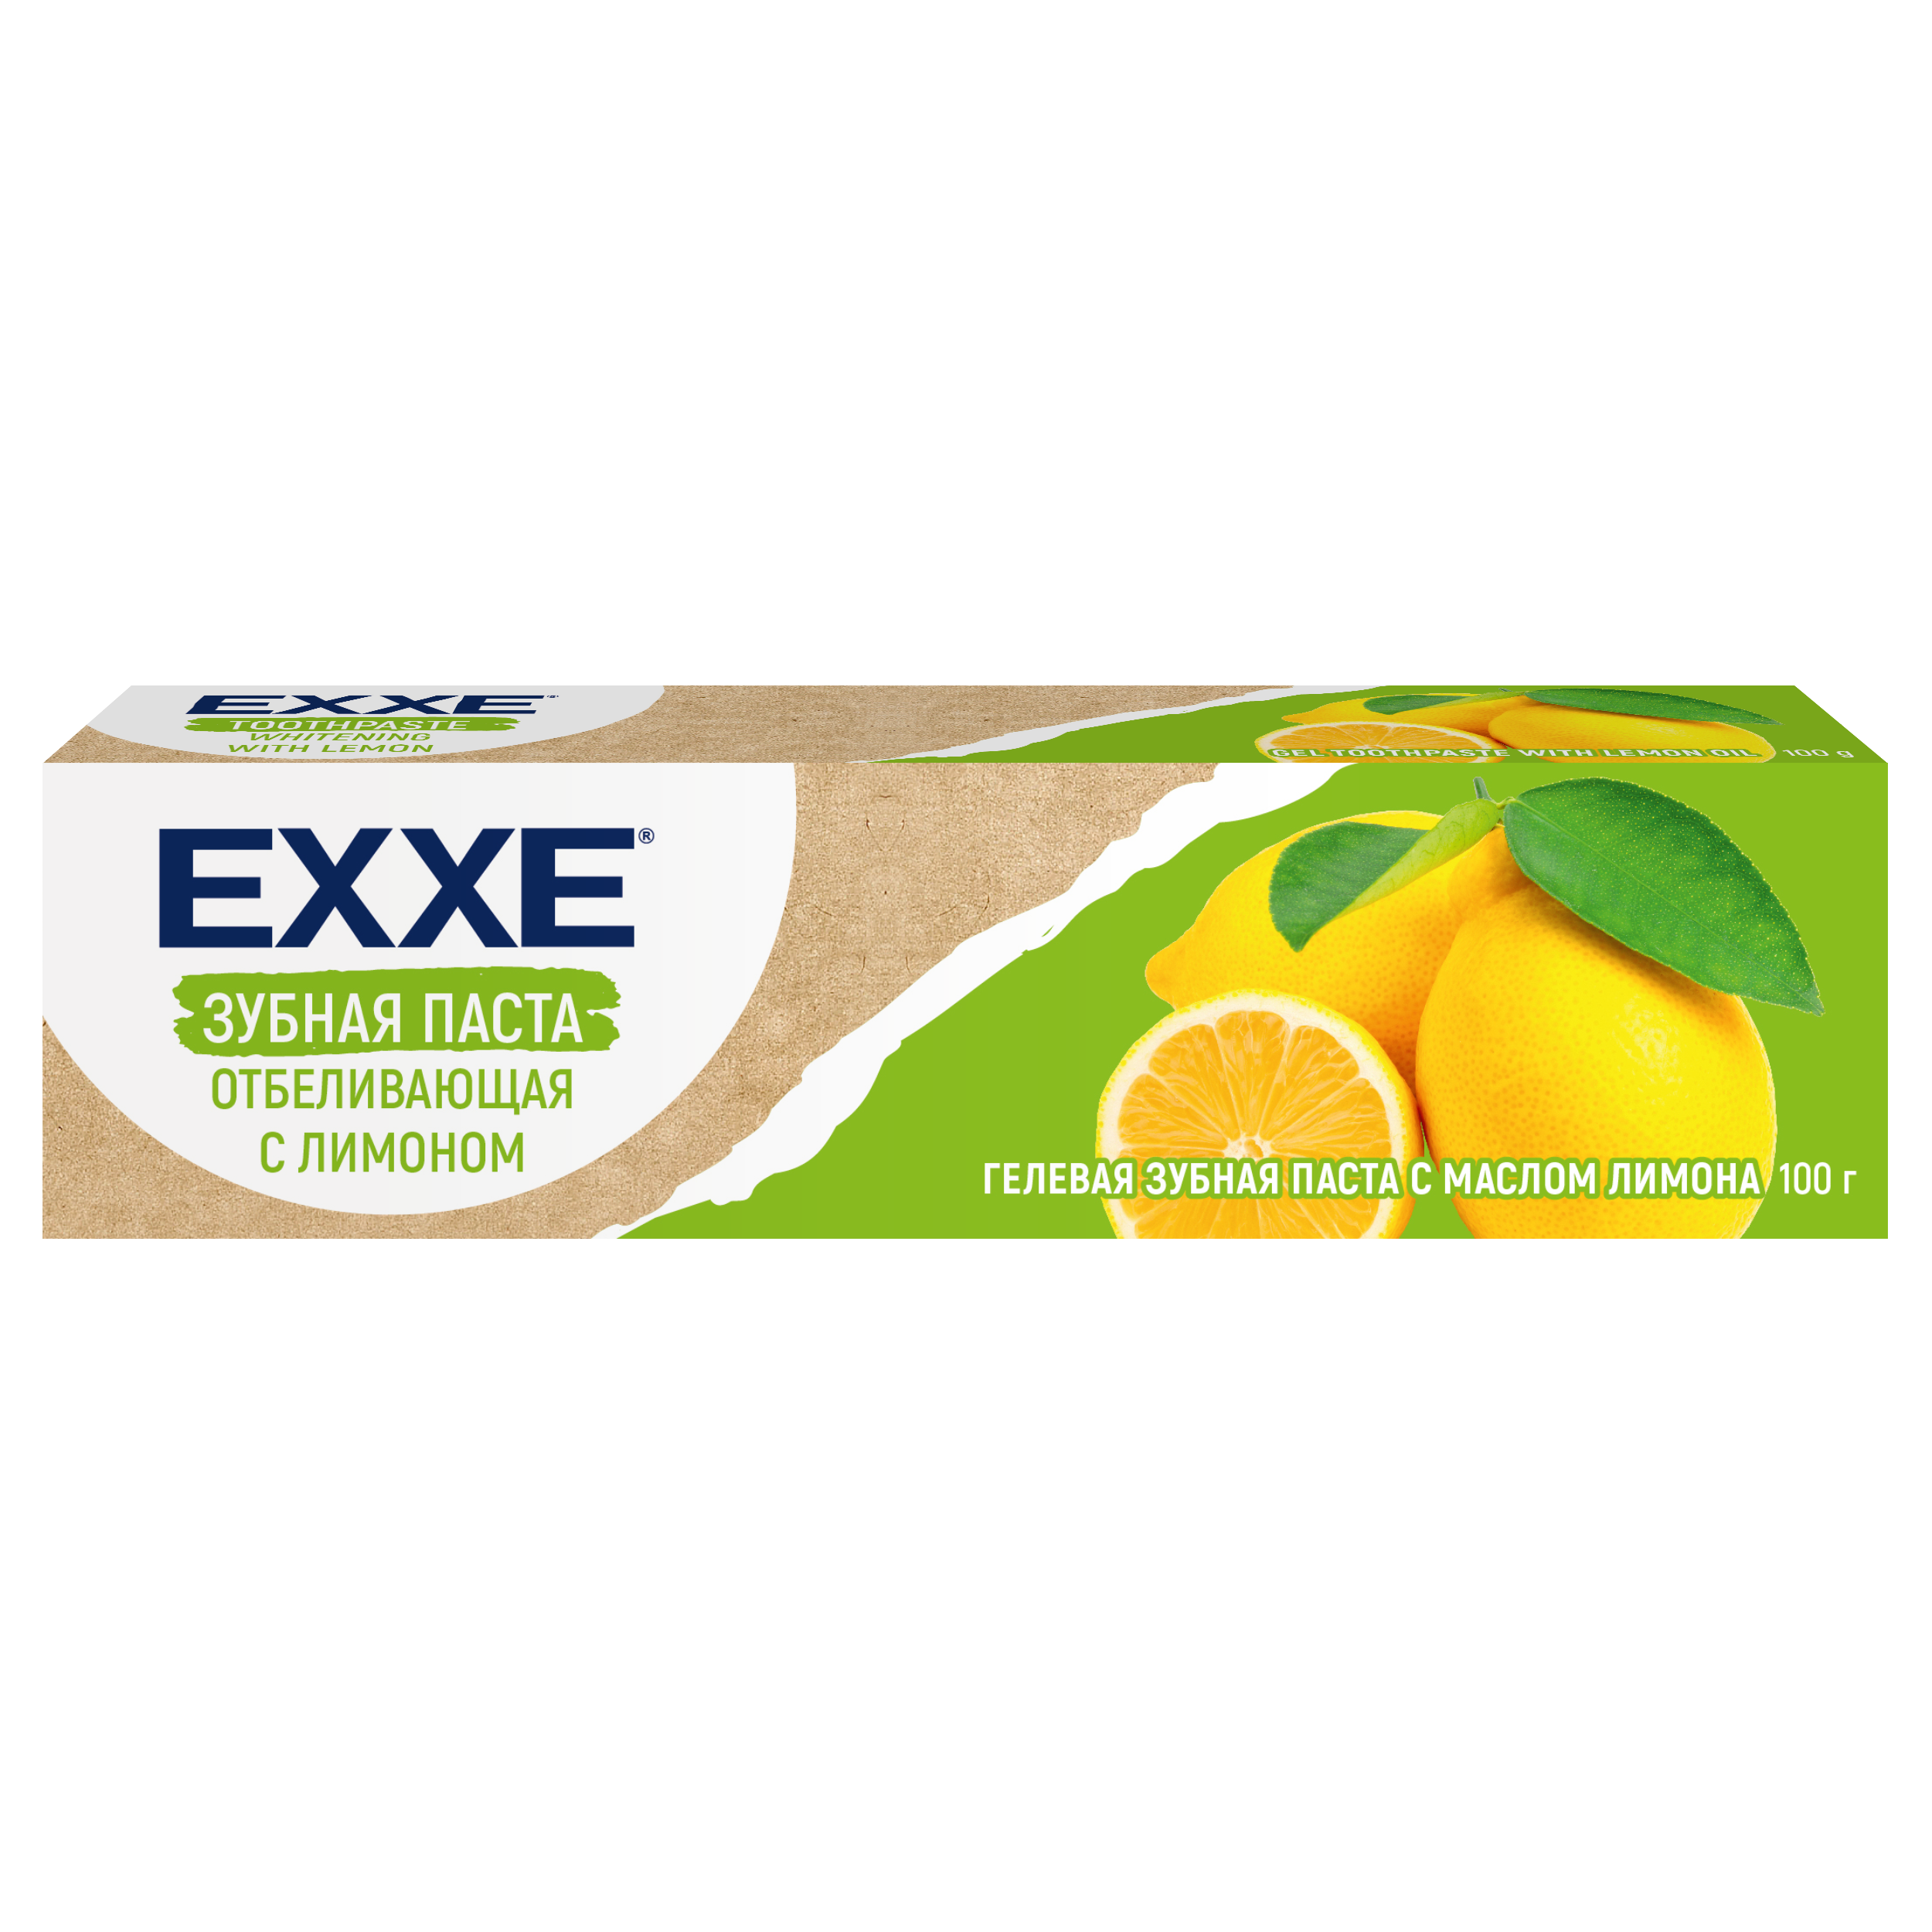 Зубная паста Exxe Отбеливающая с лимоном, 100 г зубная паста parodontax отбеливающая зубная паста 75 мл